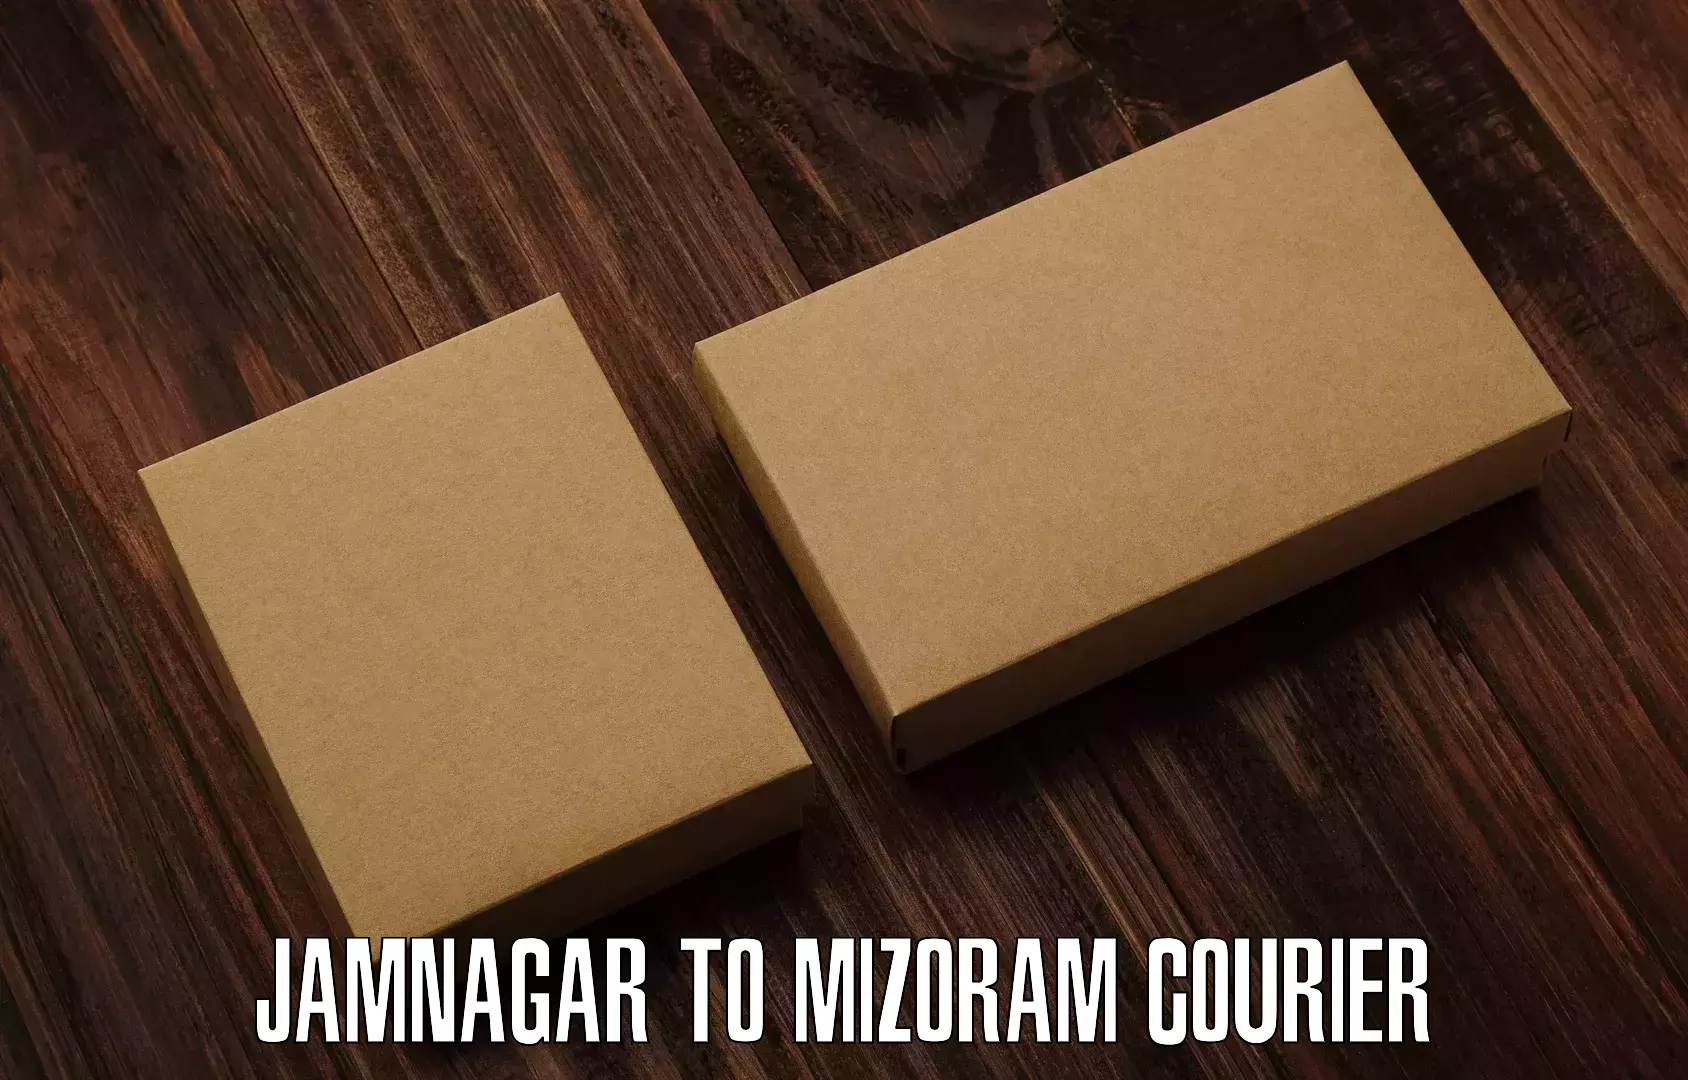 Digital courier platforms Jamnagar to Mizoram